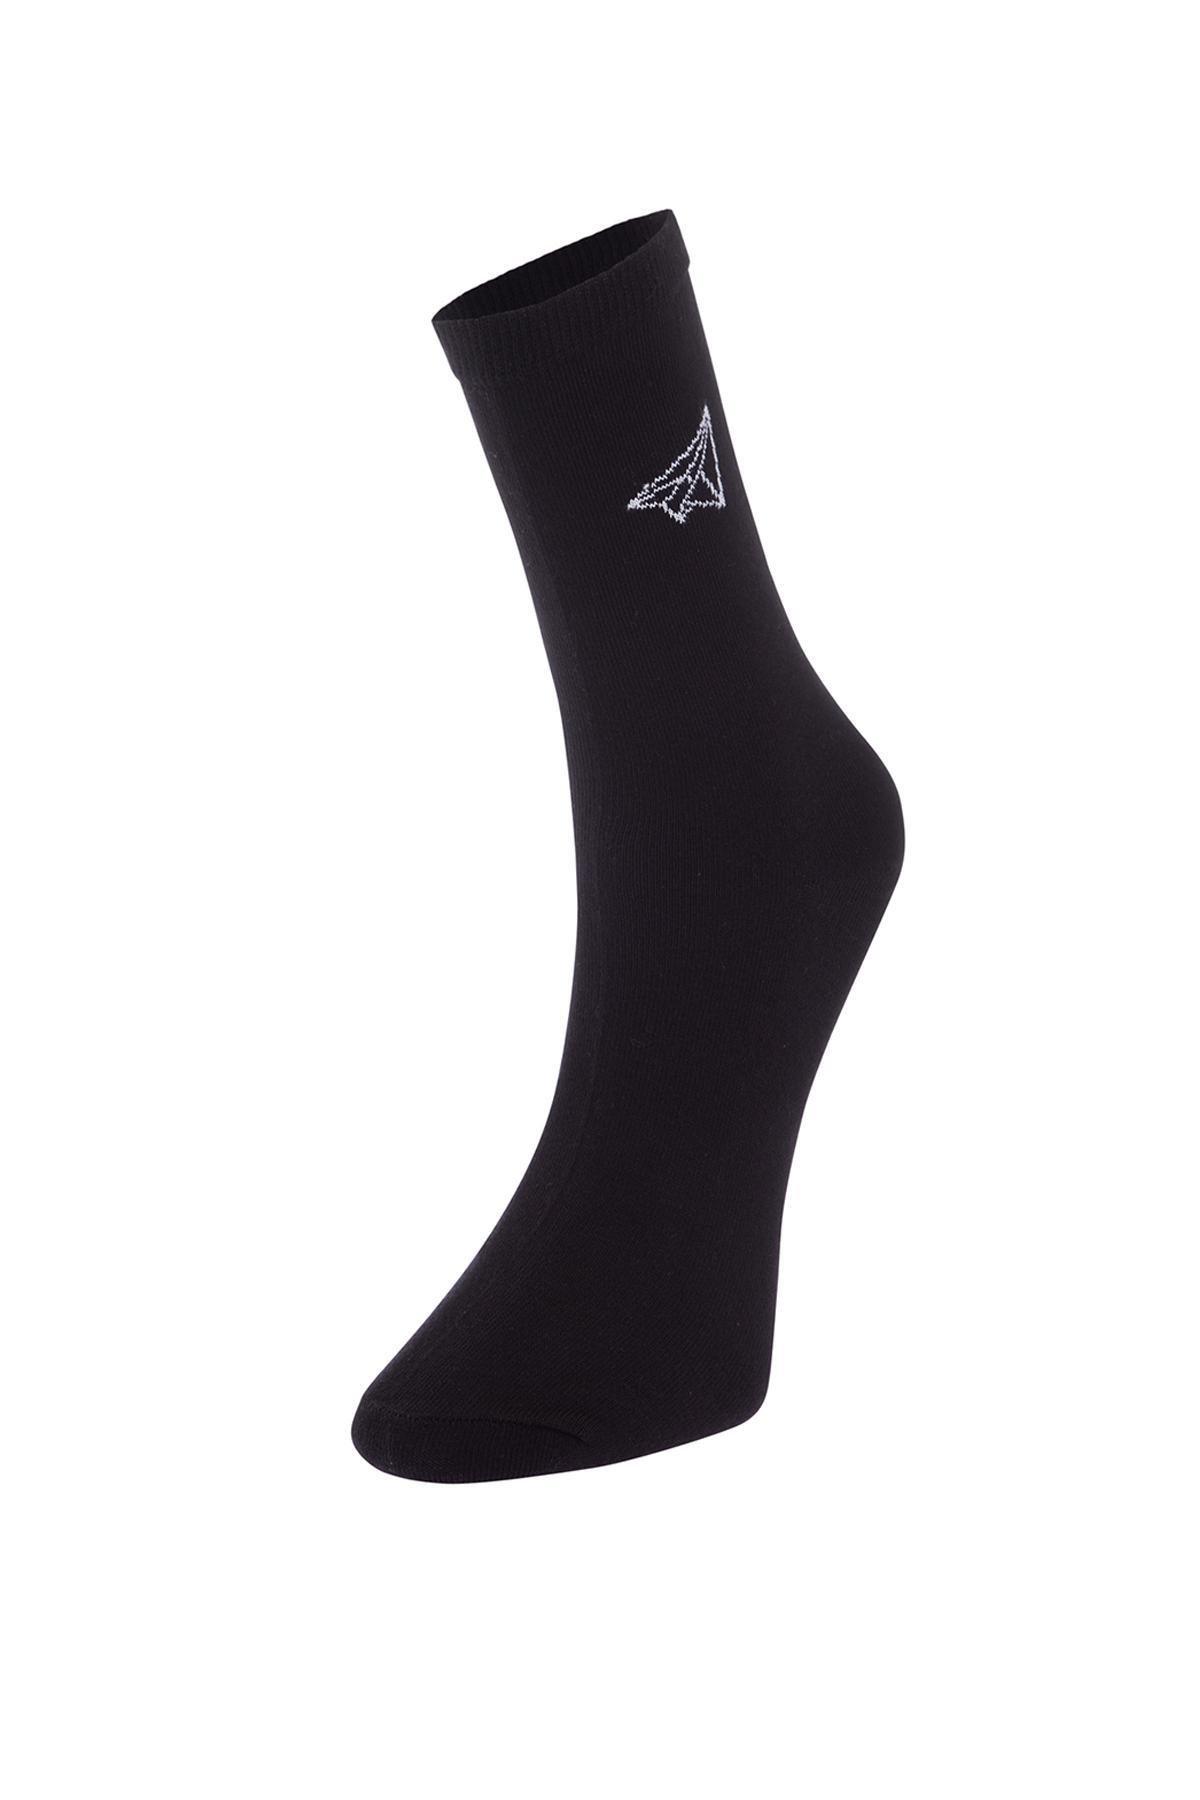 Trendyol - Multicolour Patterned Long Socks, Set Of 6